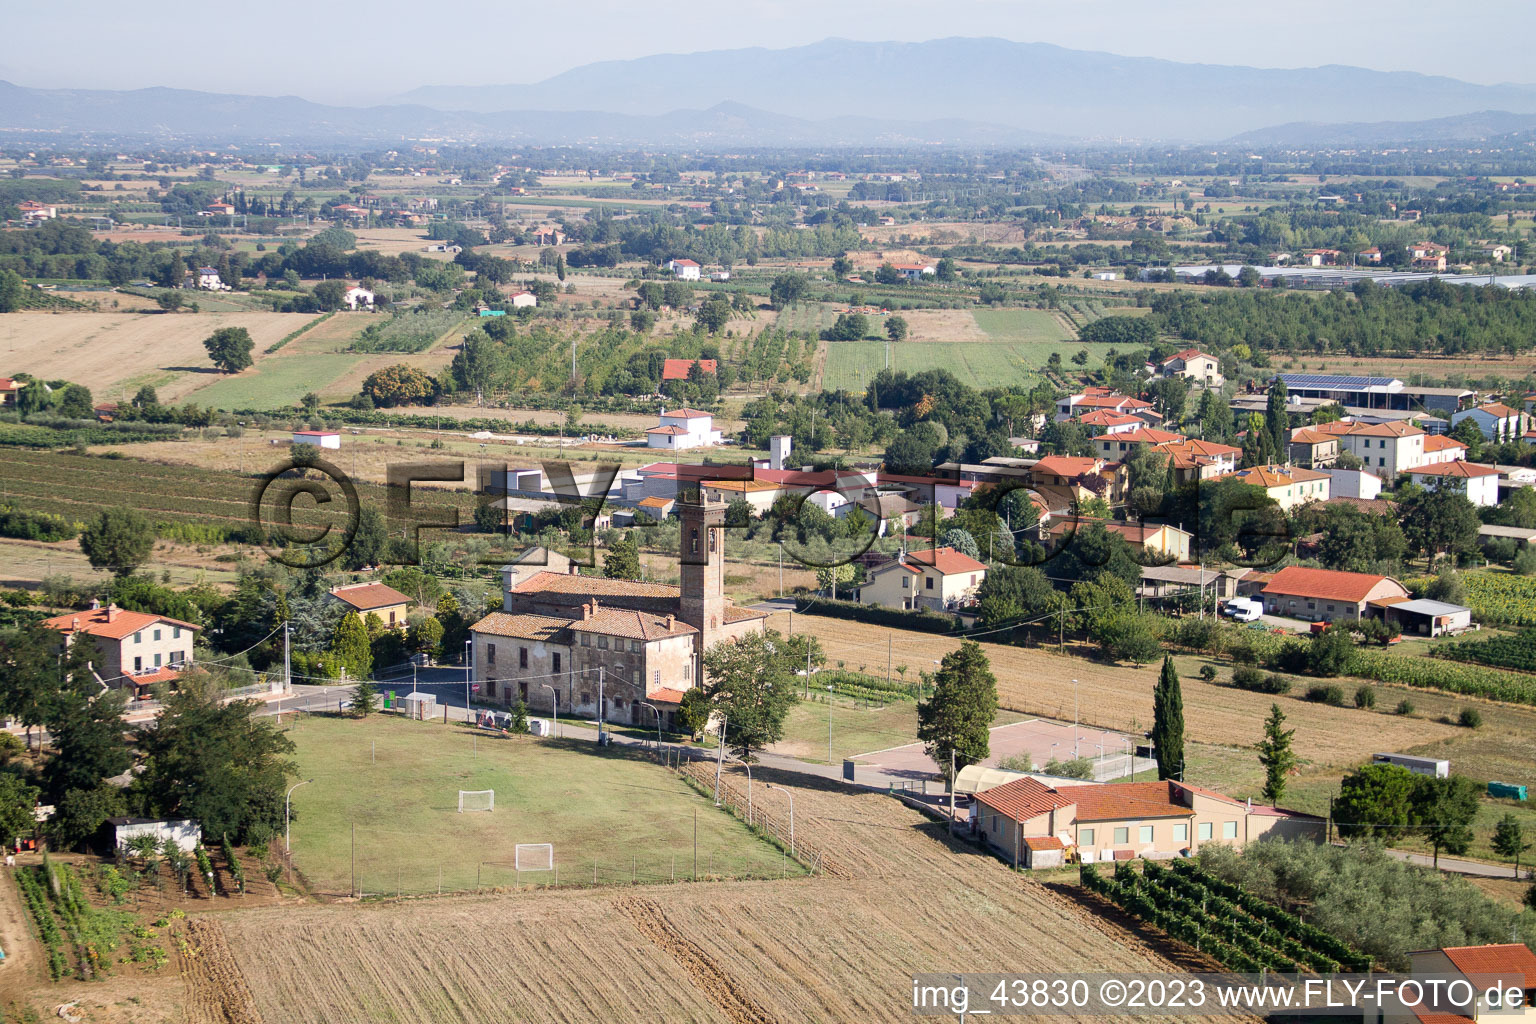 Castroncello im Bundesland Toscana, Italien von oben gesehen